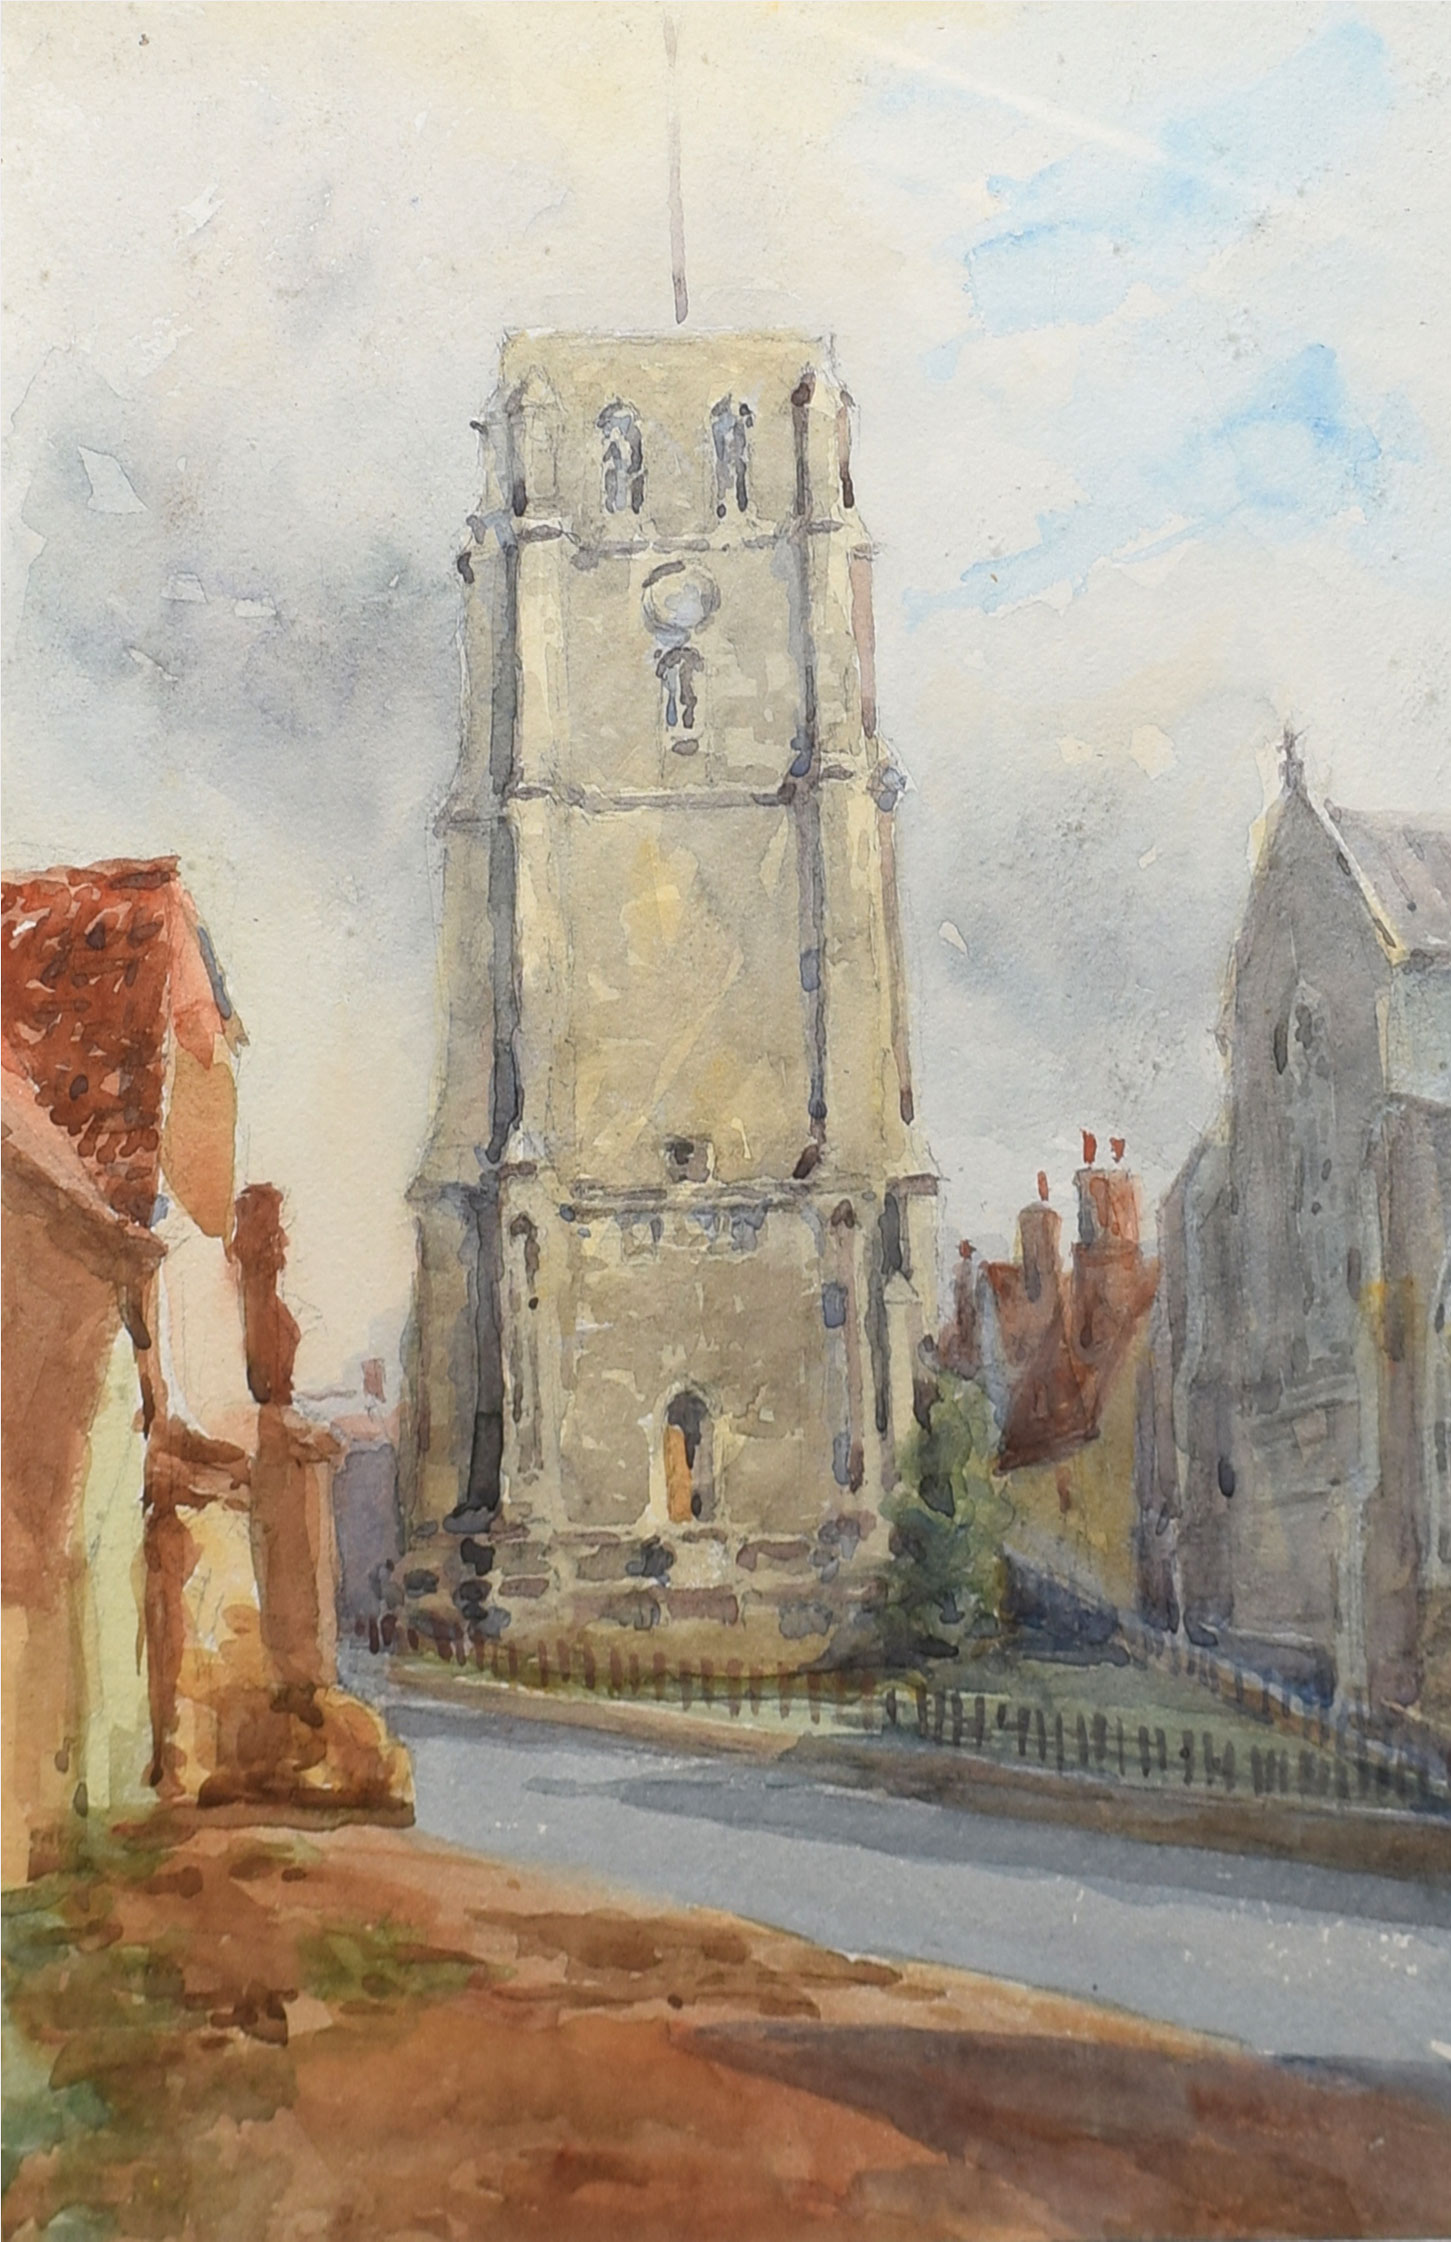 Attributed to Annie Maria Garnish, "Beccles Church", watercolour, 27 x 26cm